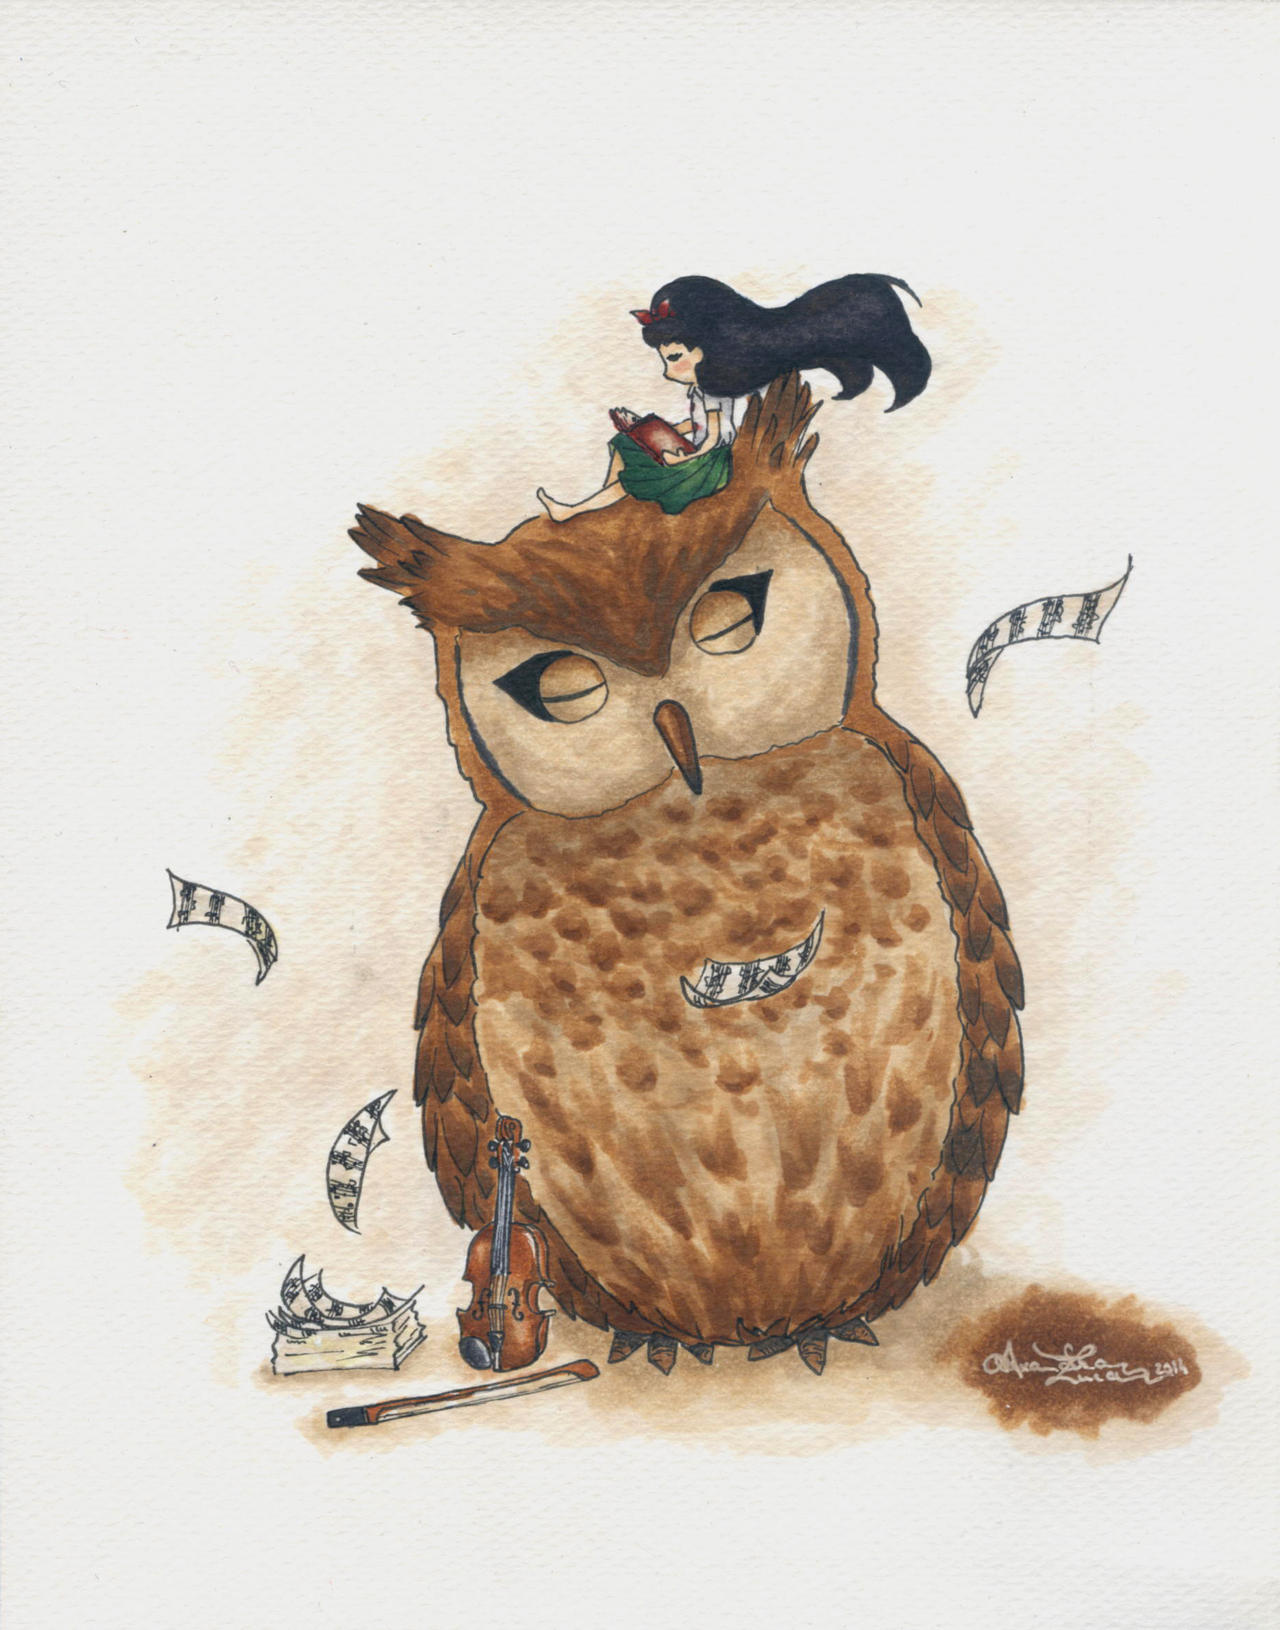 Simo and the Owl